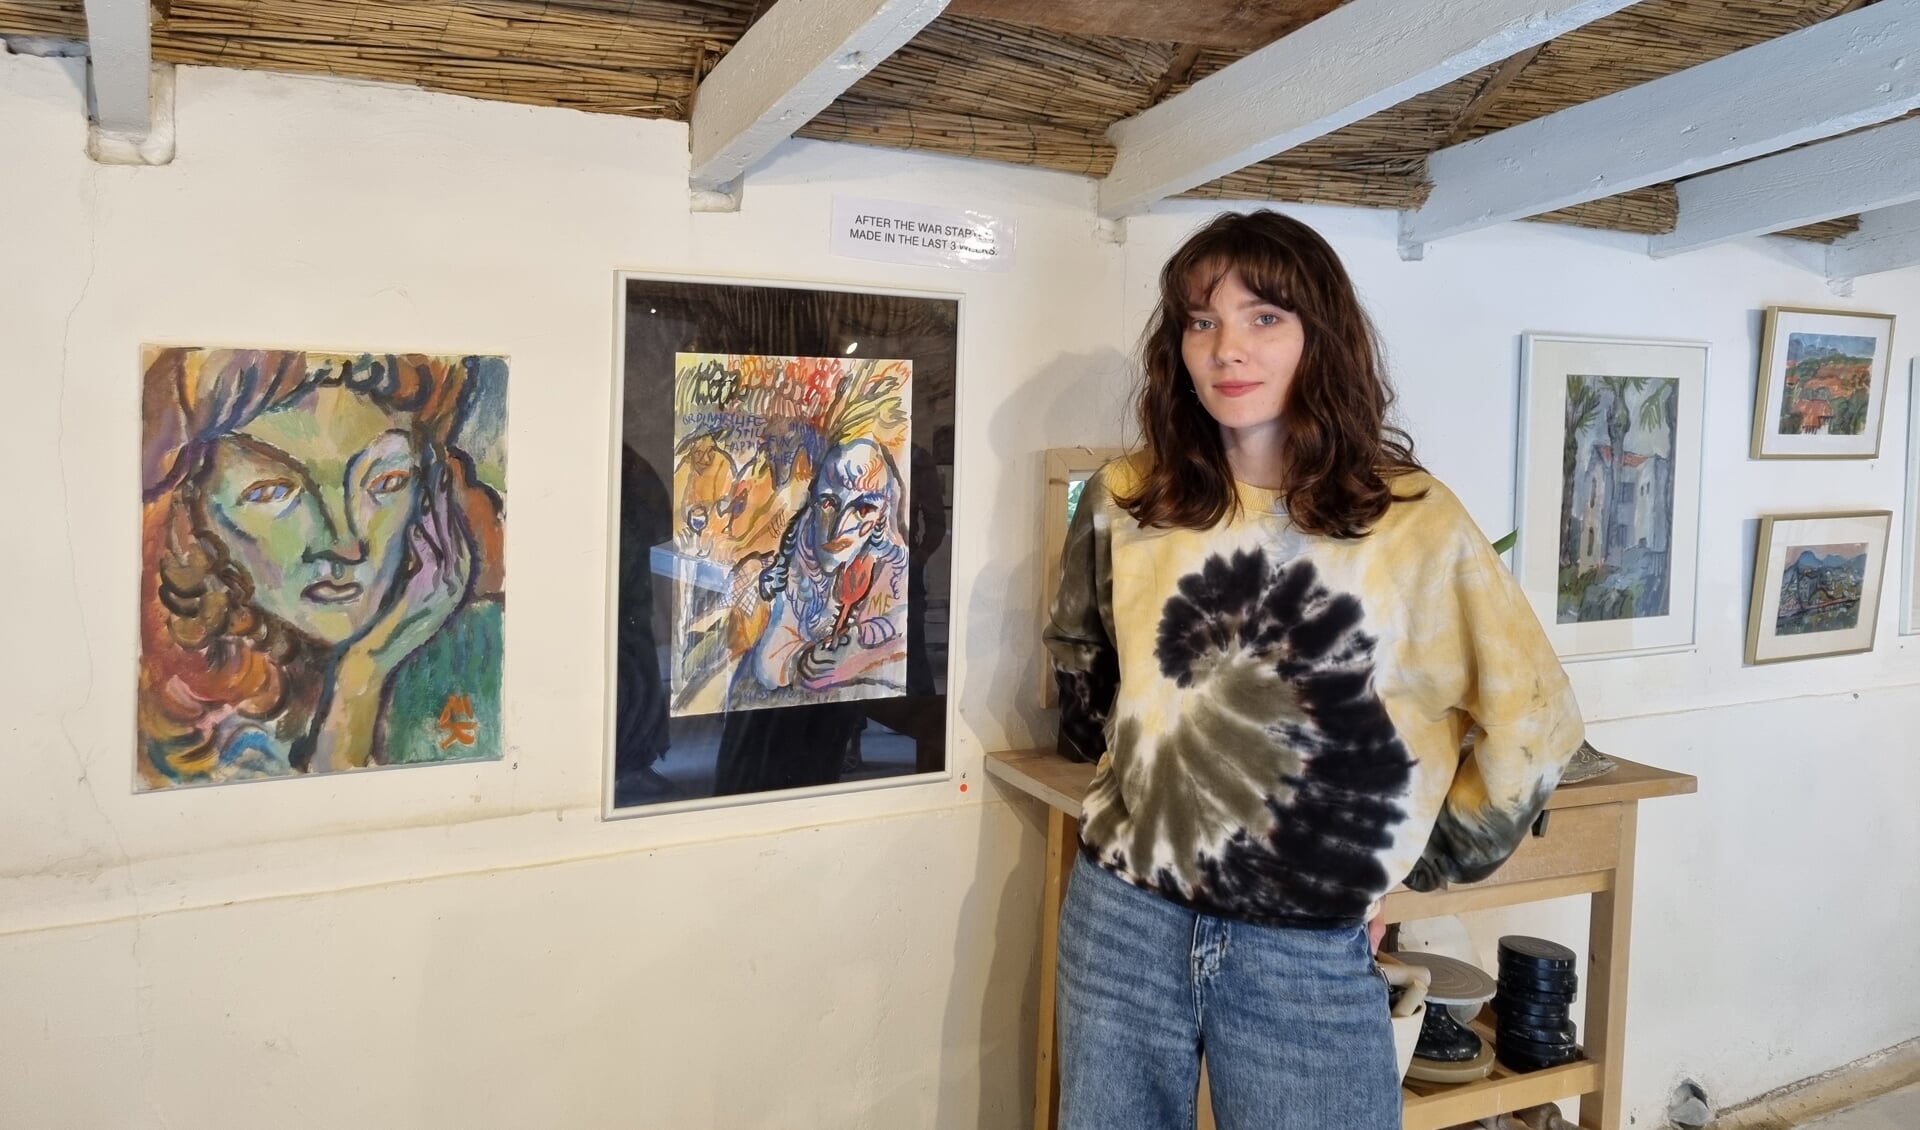 Kunstenares Maria Kitaeva; links van haar de schilderijen voor de inval van de Russen en rechts haar zelfportretten na de inval. (Foto: Rob Weeber